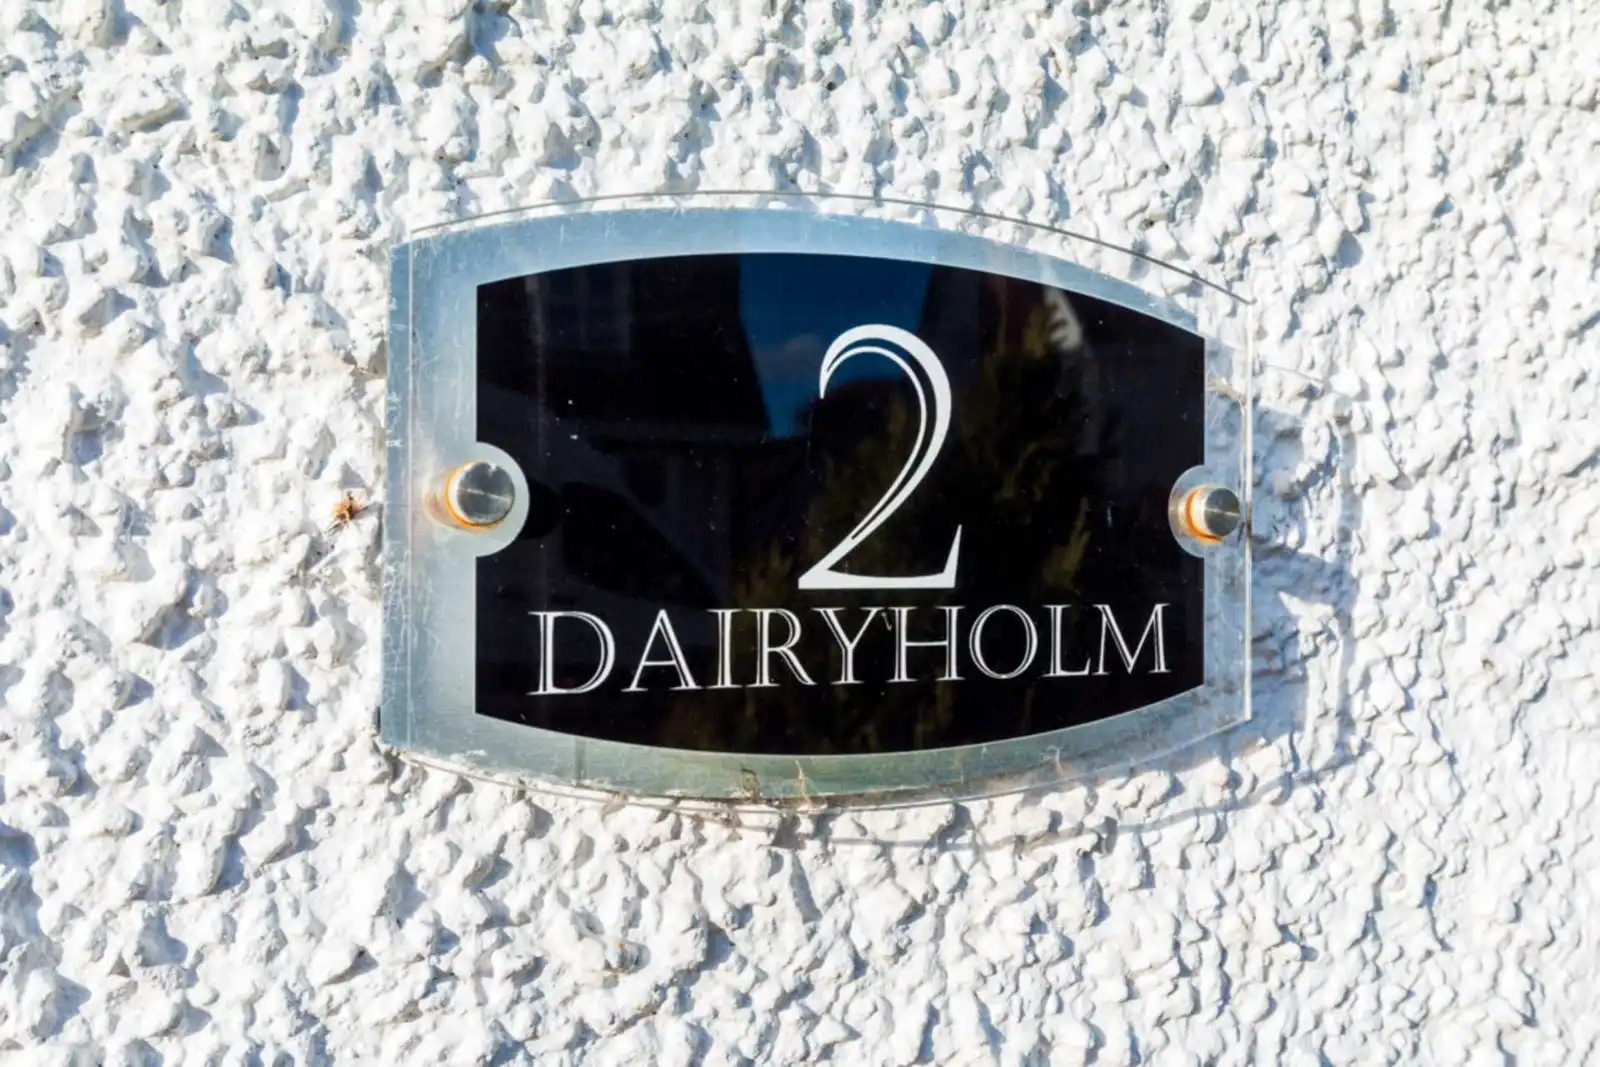 2 Dairy Holm, Carrickfergus